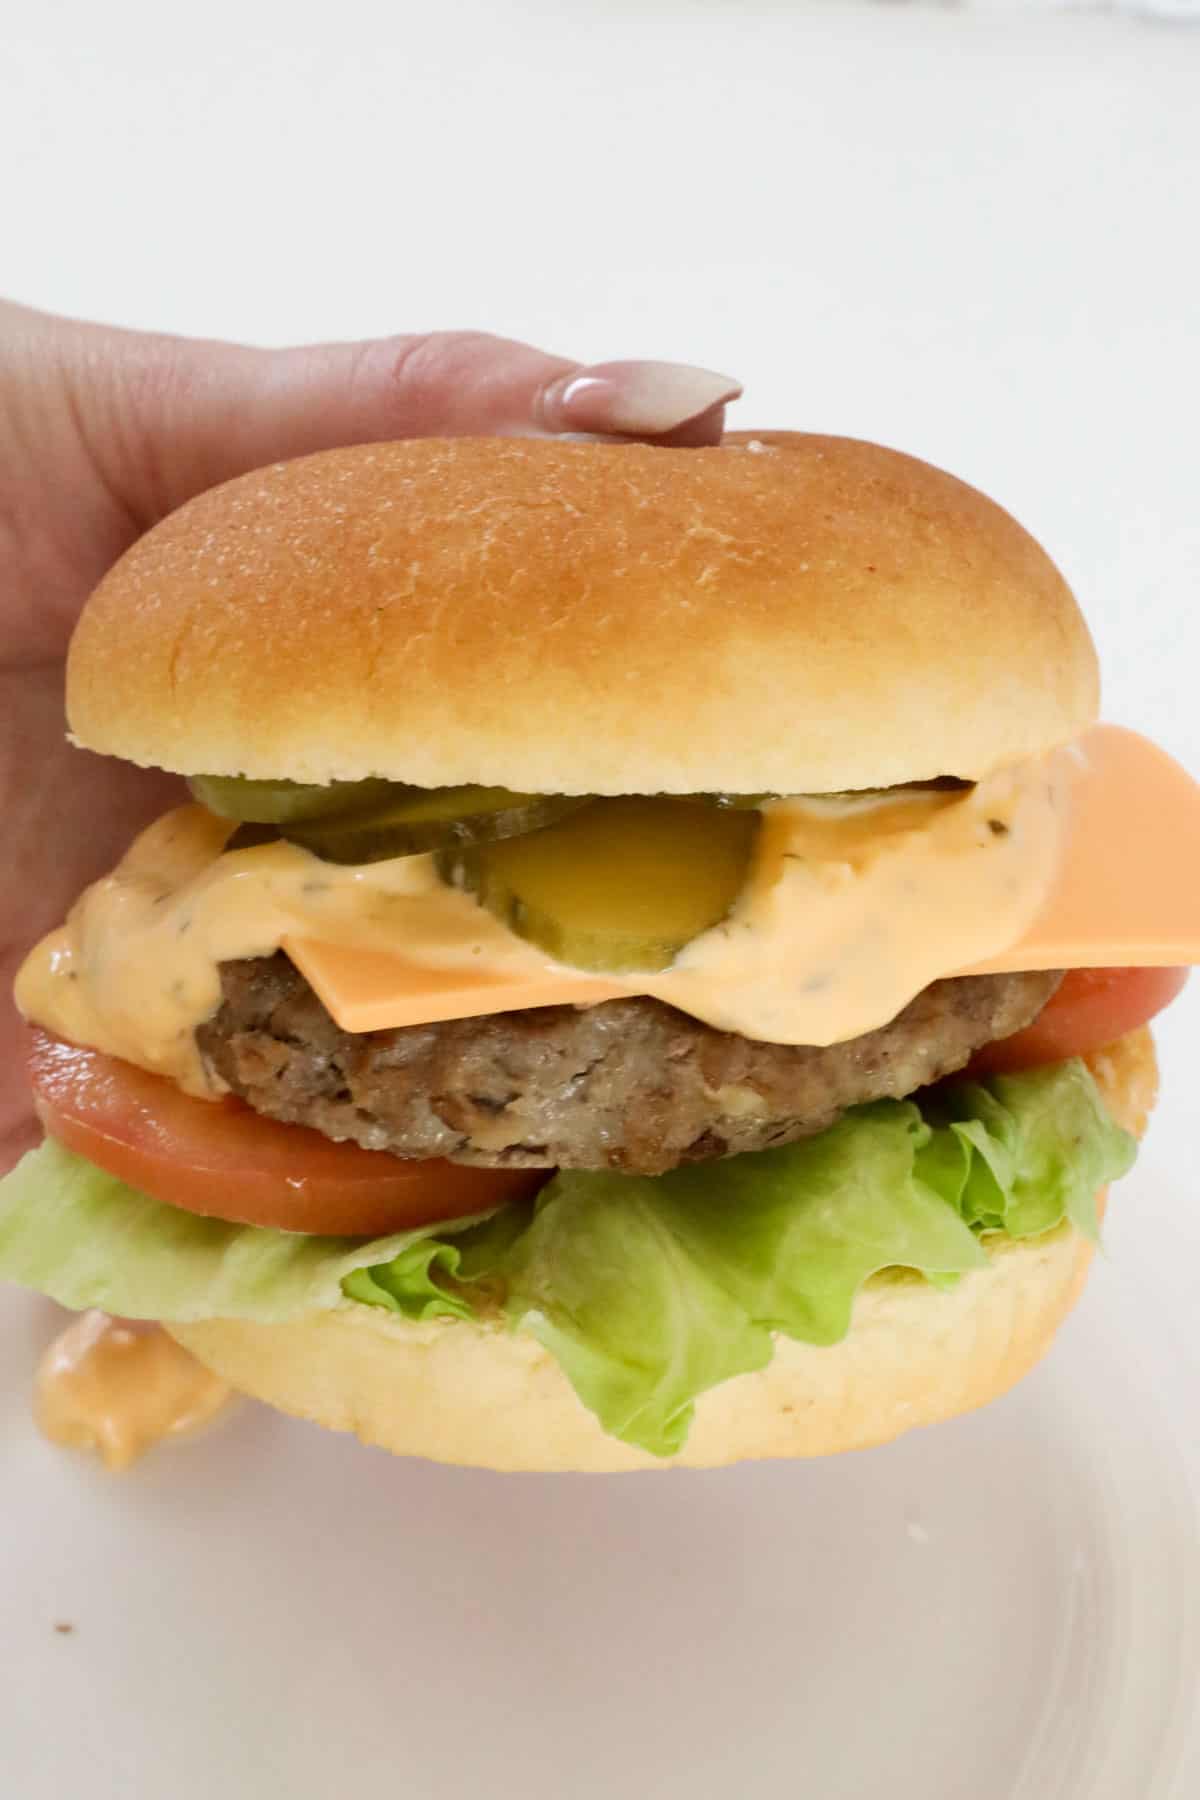 A hand holding a beef patty burger on a bun.